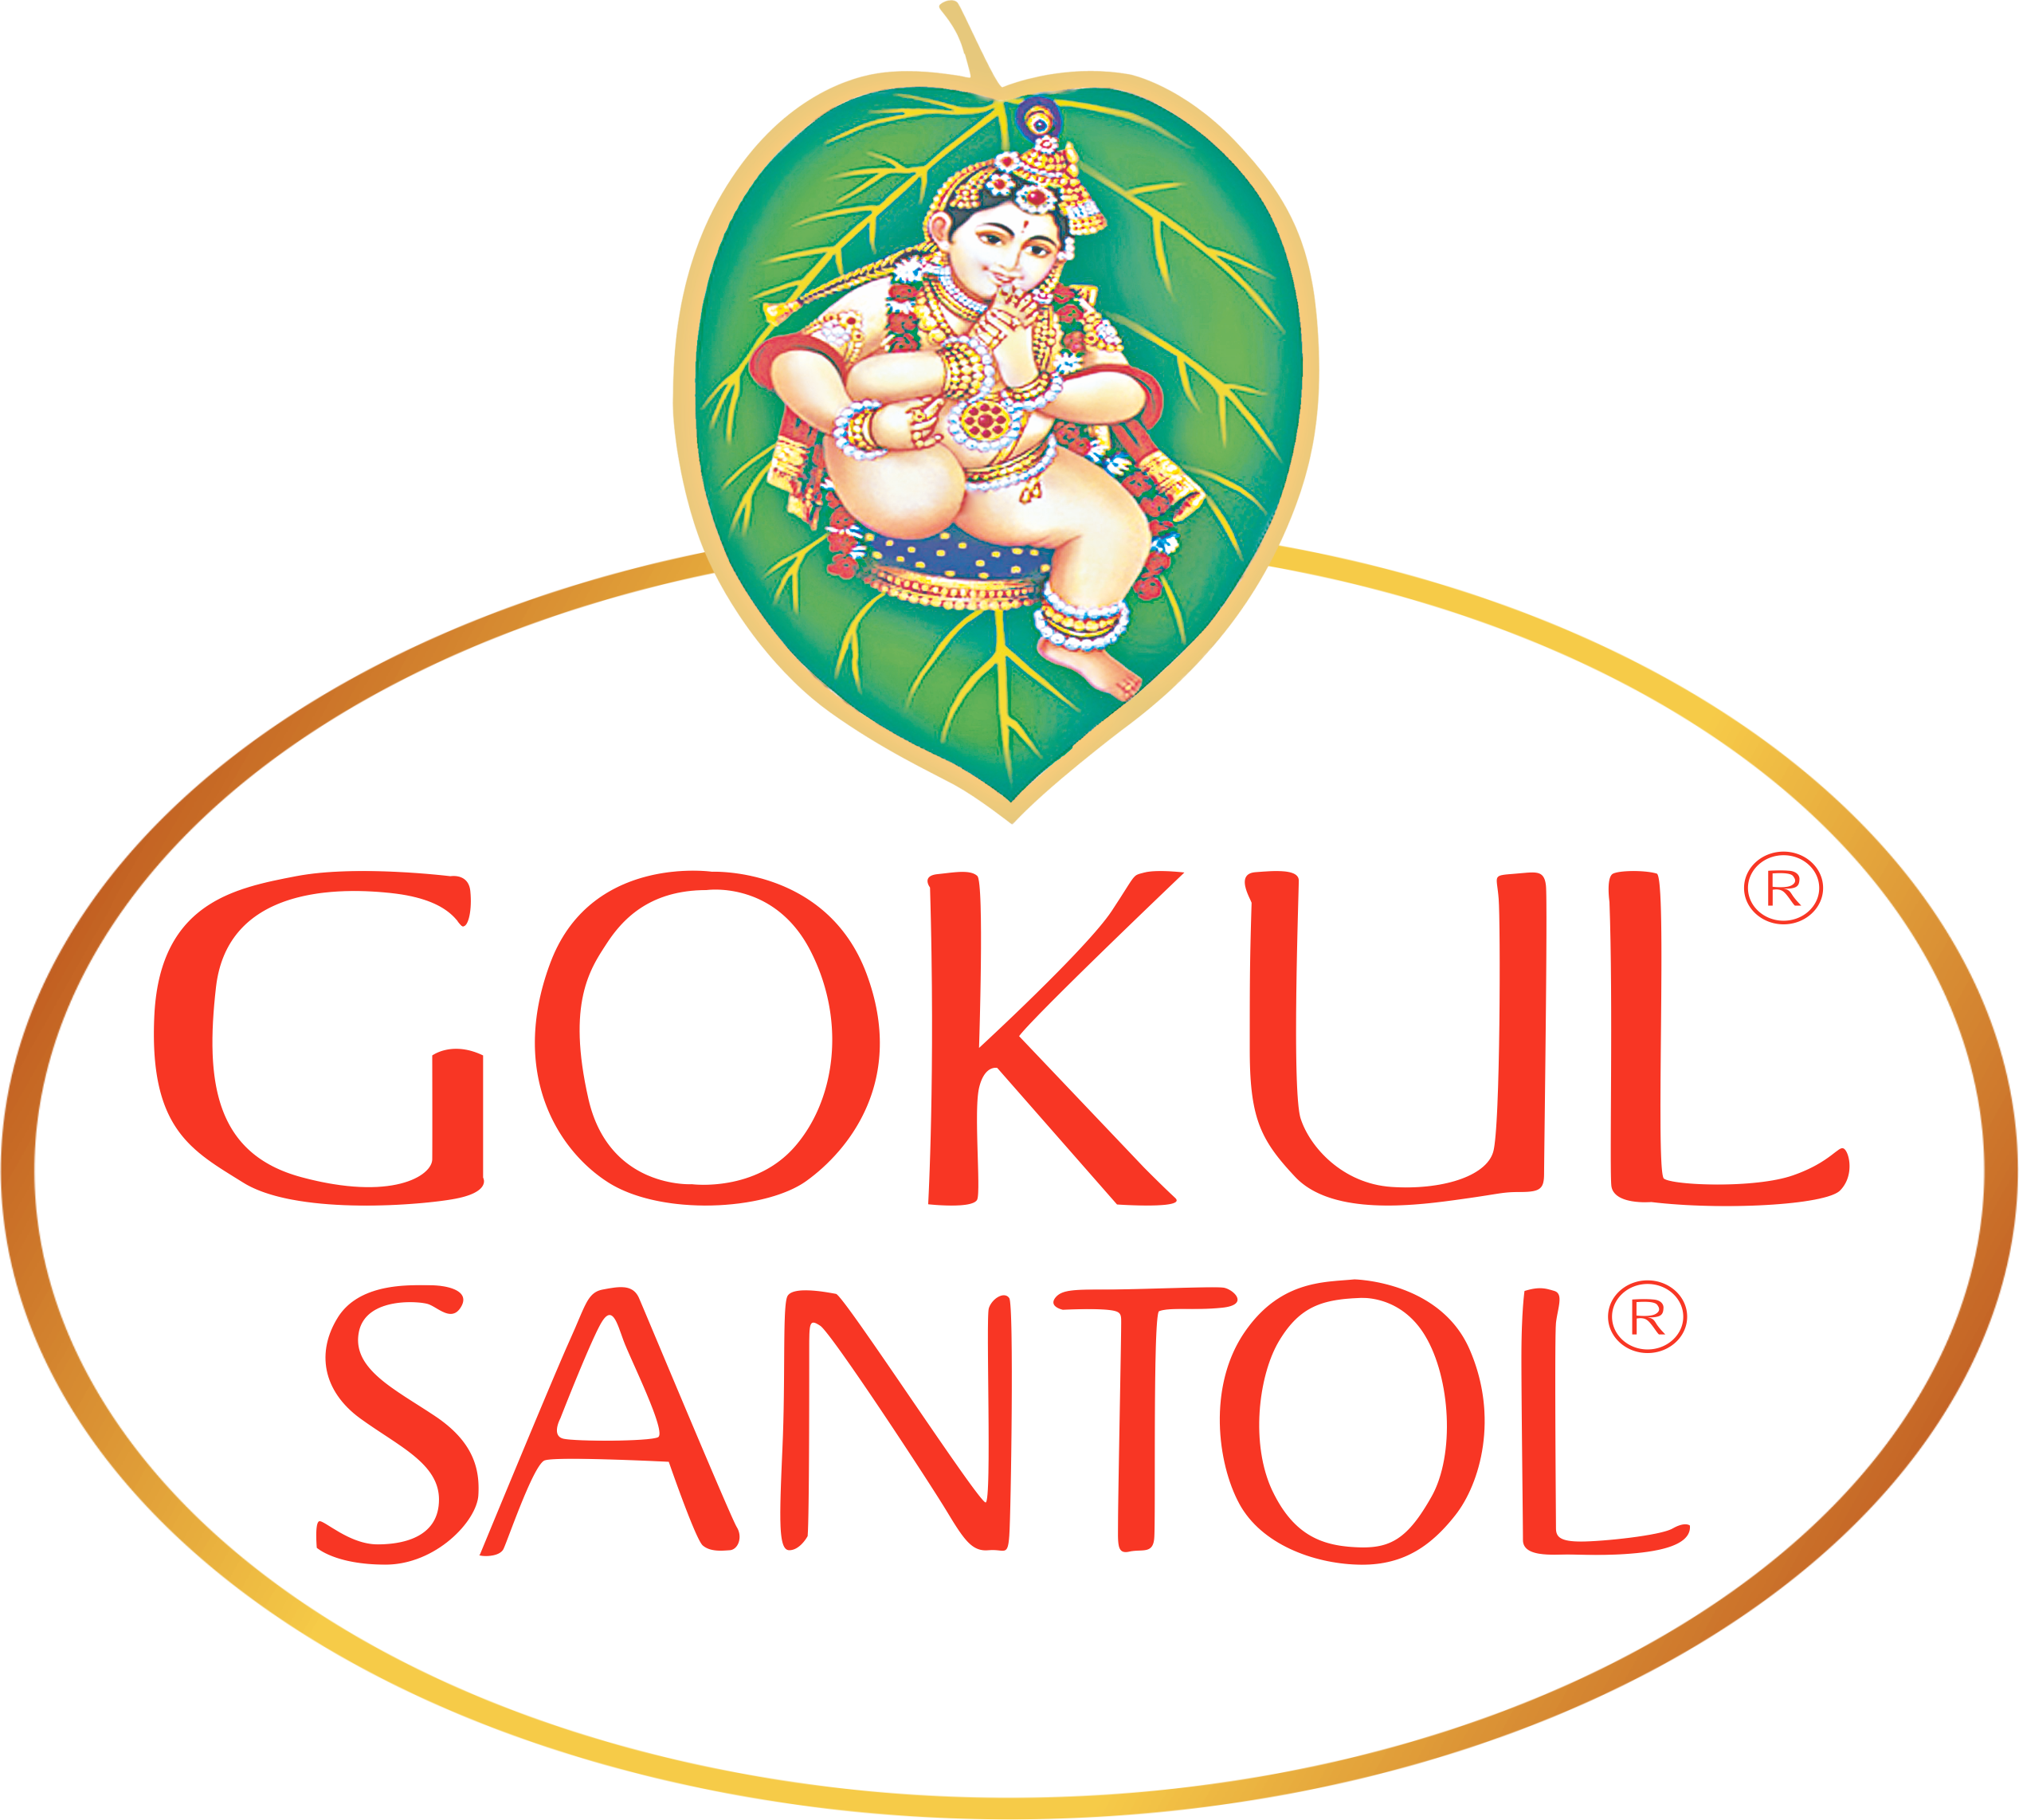 Gokul Santol